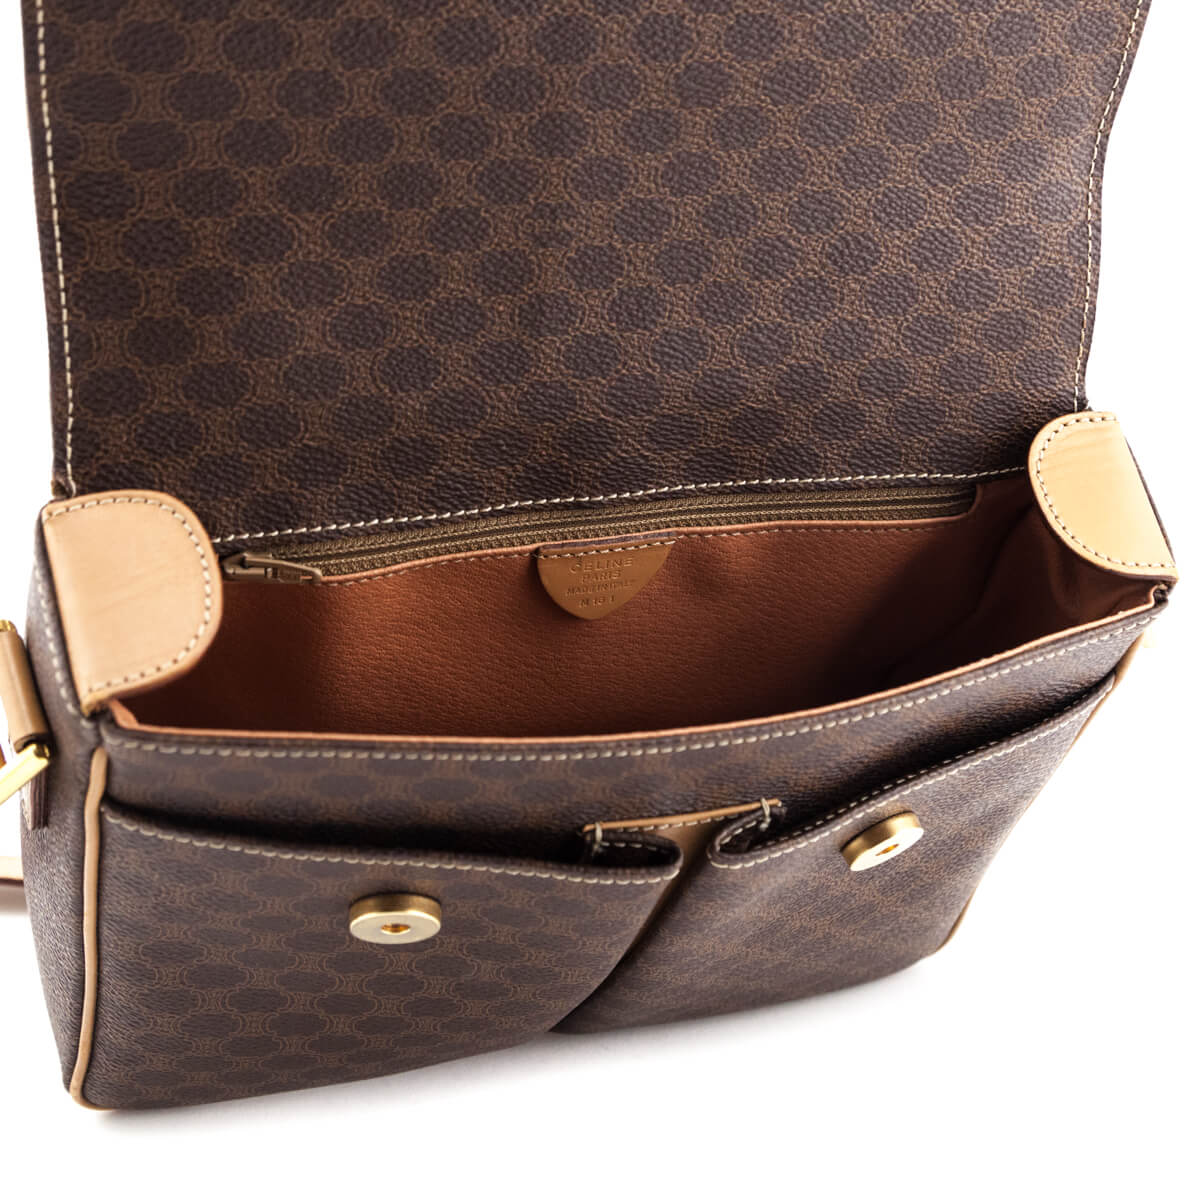 Celine Vintage Macadam Travel Bag Brown — Handbag Prescription